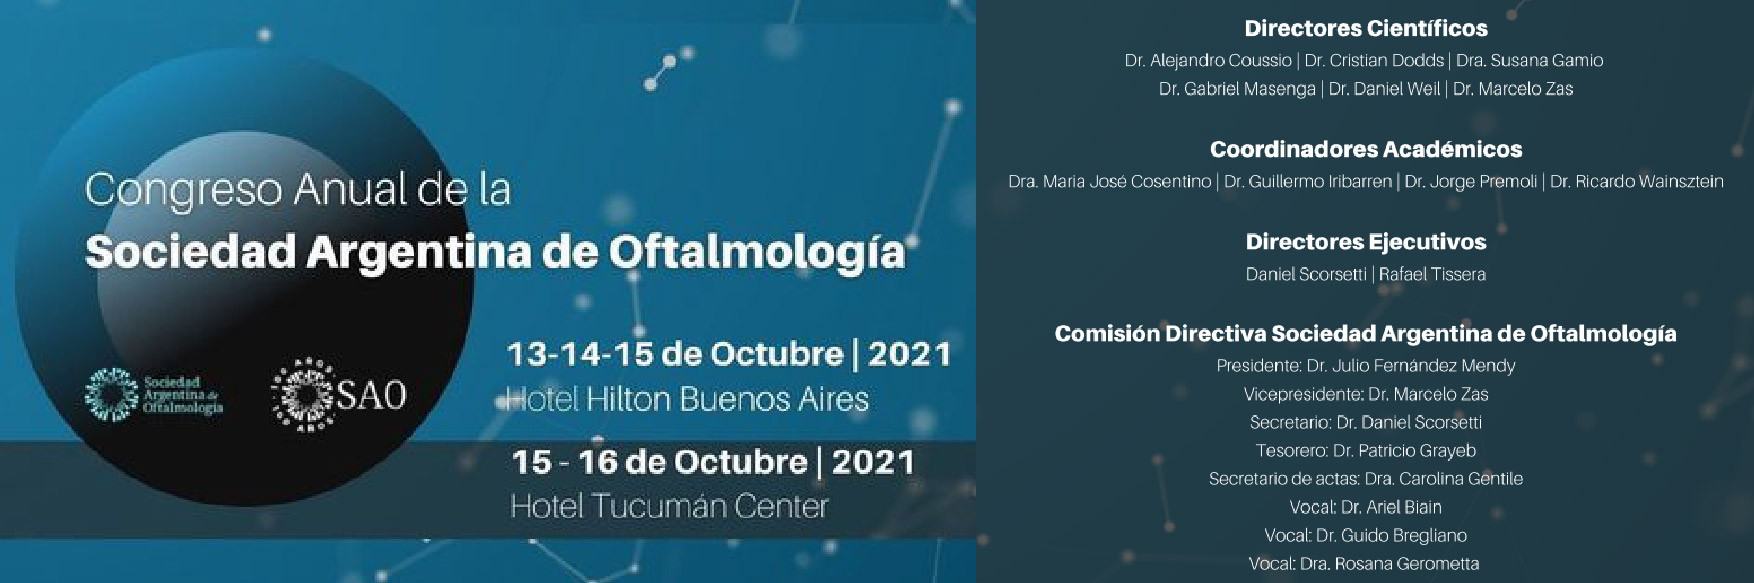 Congreso Anual de la Sociedad Argentina de Oftalmología 2021